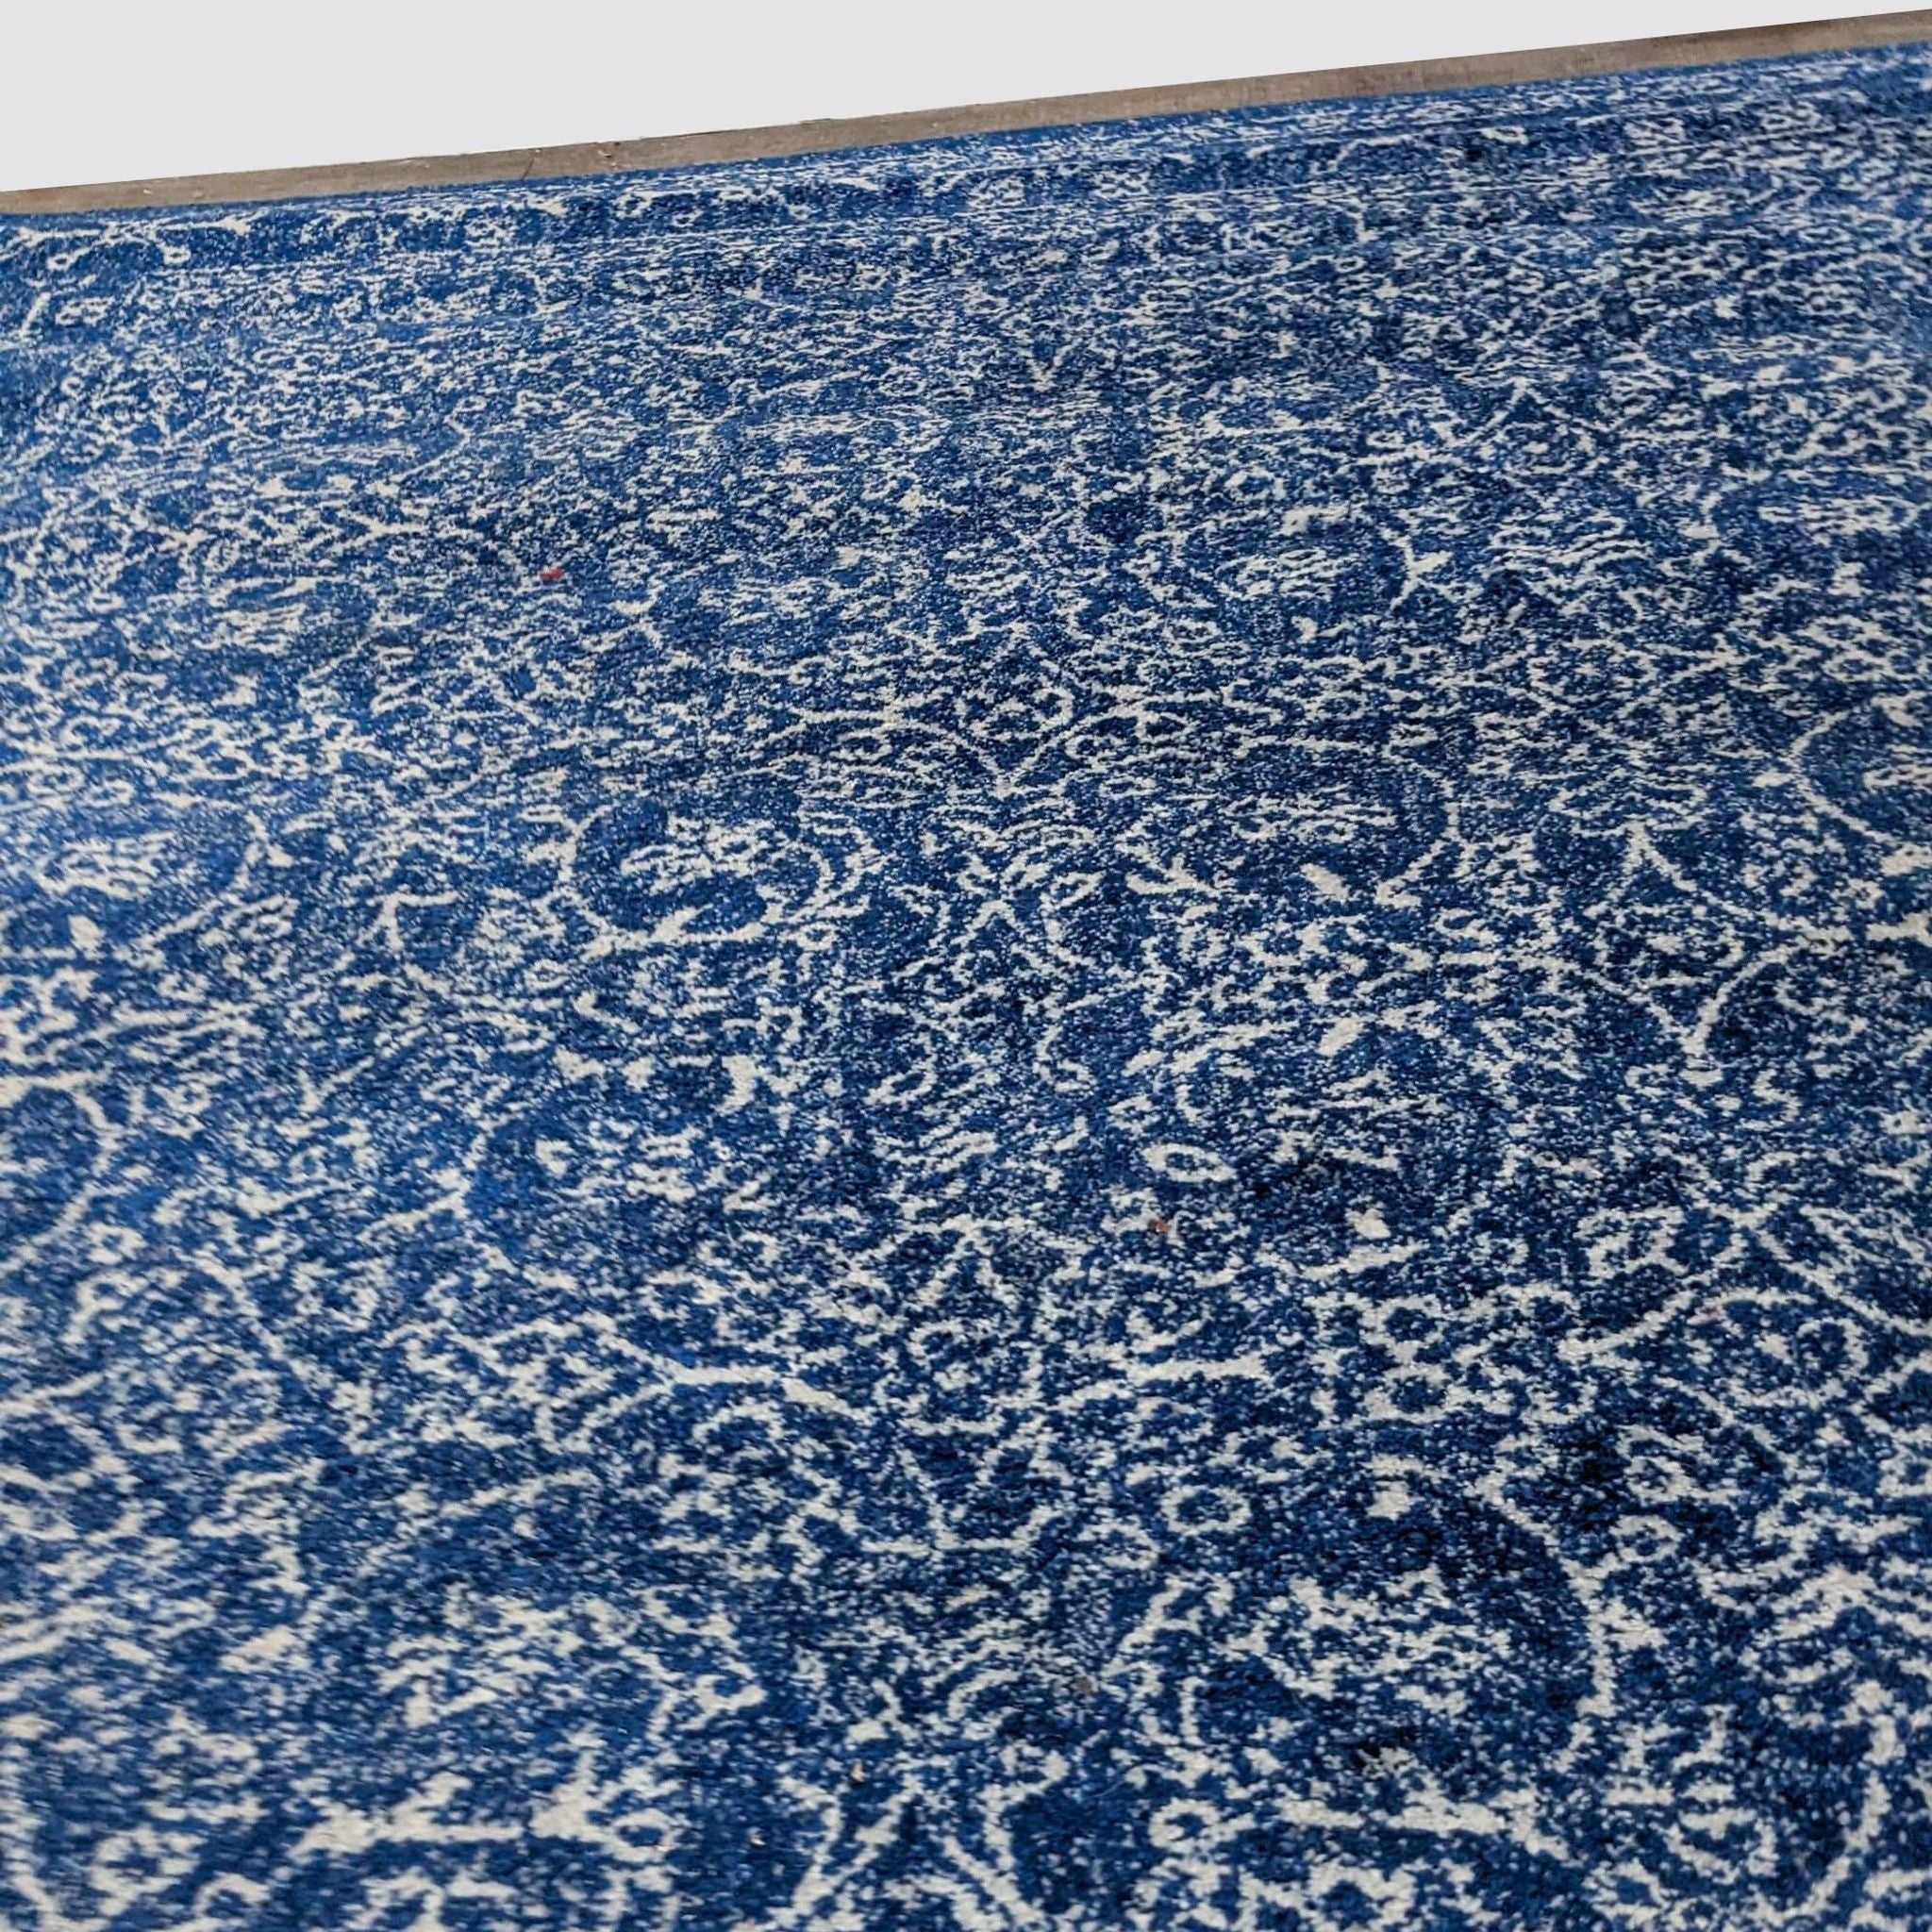 Dark blue nuLOOM Waddell Vintage area rug with Oriental pattern, 6’7”x9’, low pile, displayed on floor.